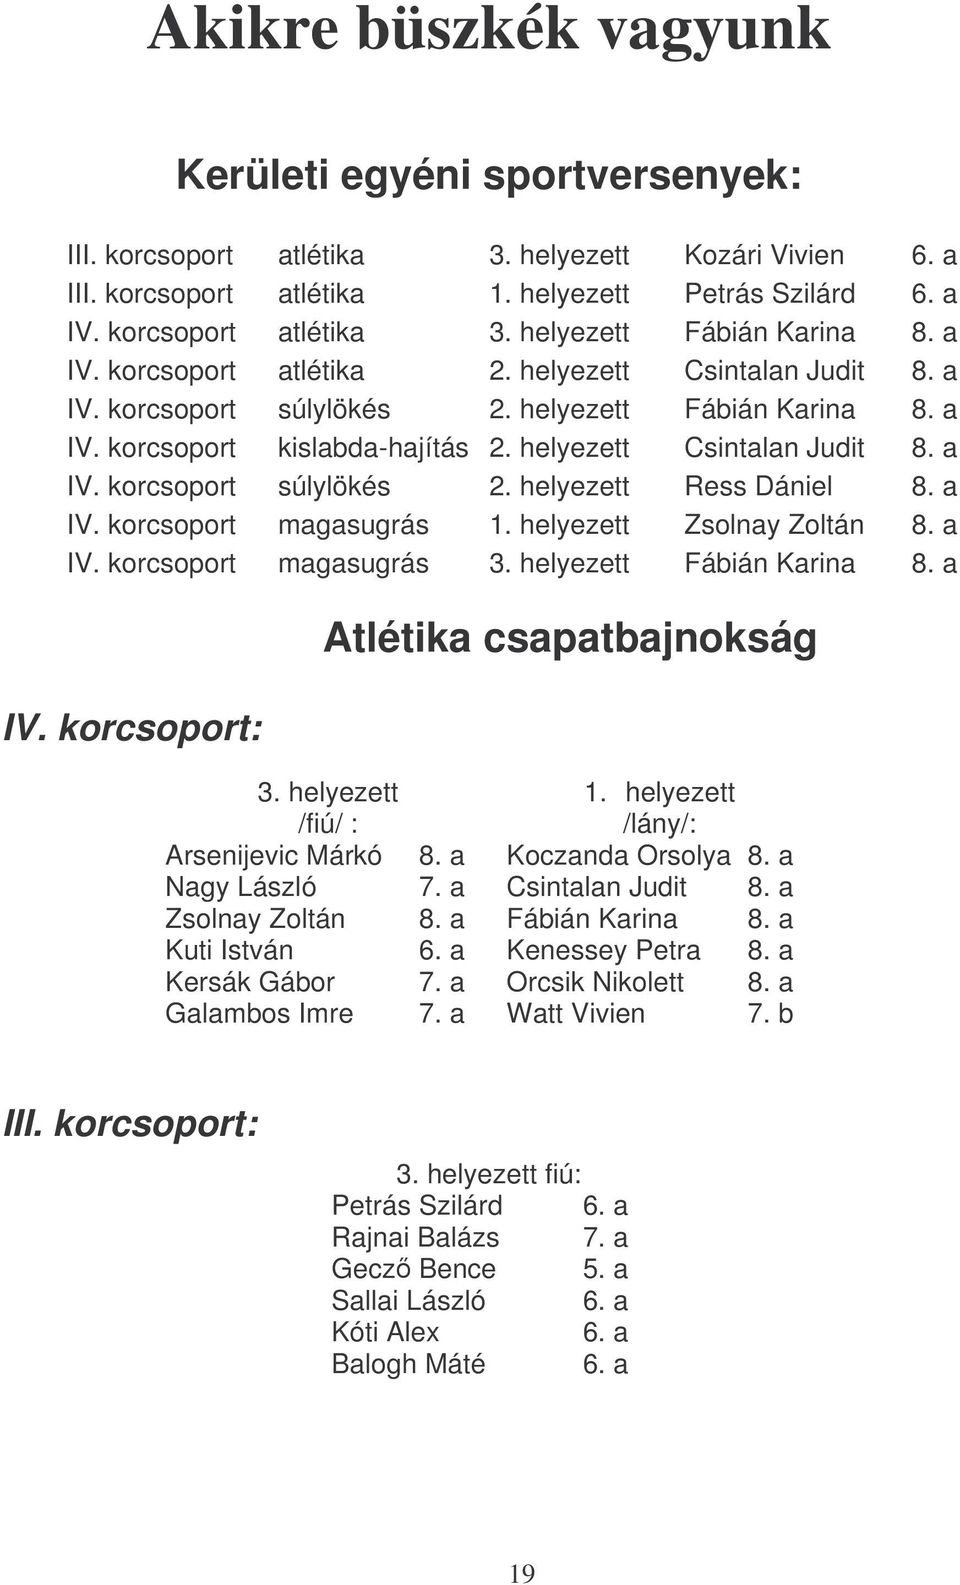 a IV. korcsoport magasugrás 1. helyezett Zsolnay Zoltán 8. a IV. korcsoport magasugrás 3. helyezett Fábián Karina 8. a IV. korcsoport: Atlétika csapatbajnokság 3. helyezett /fiú/ : 1.